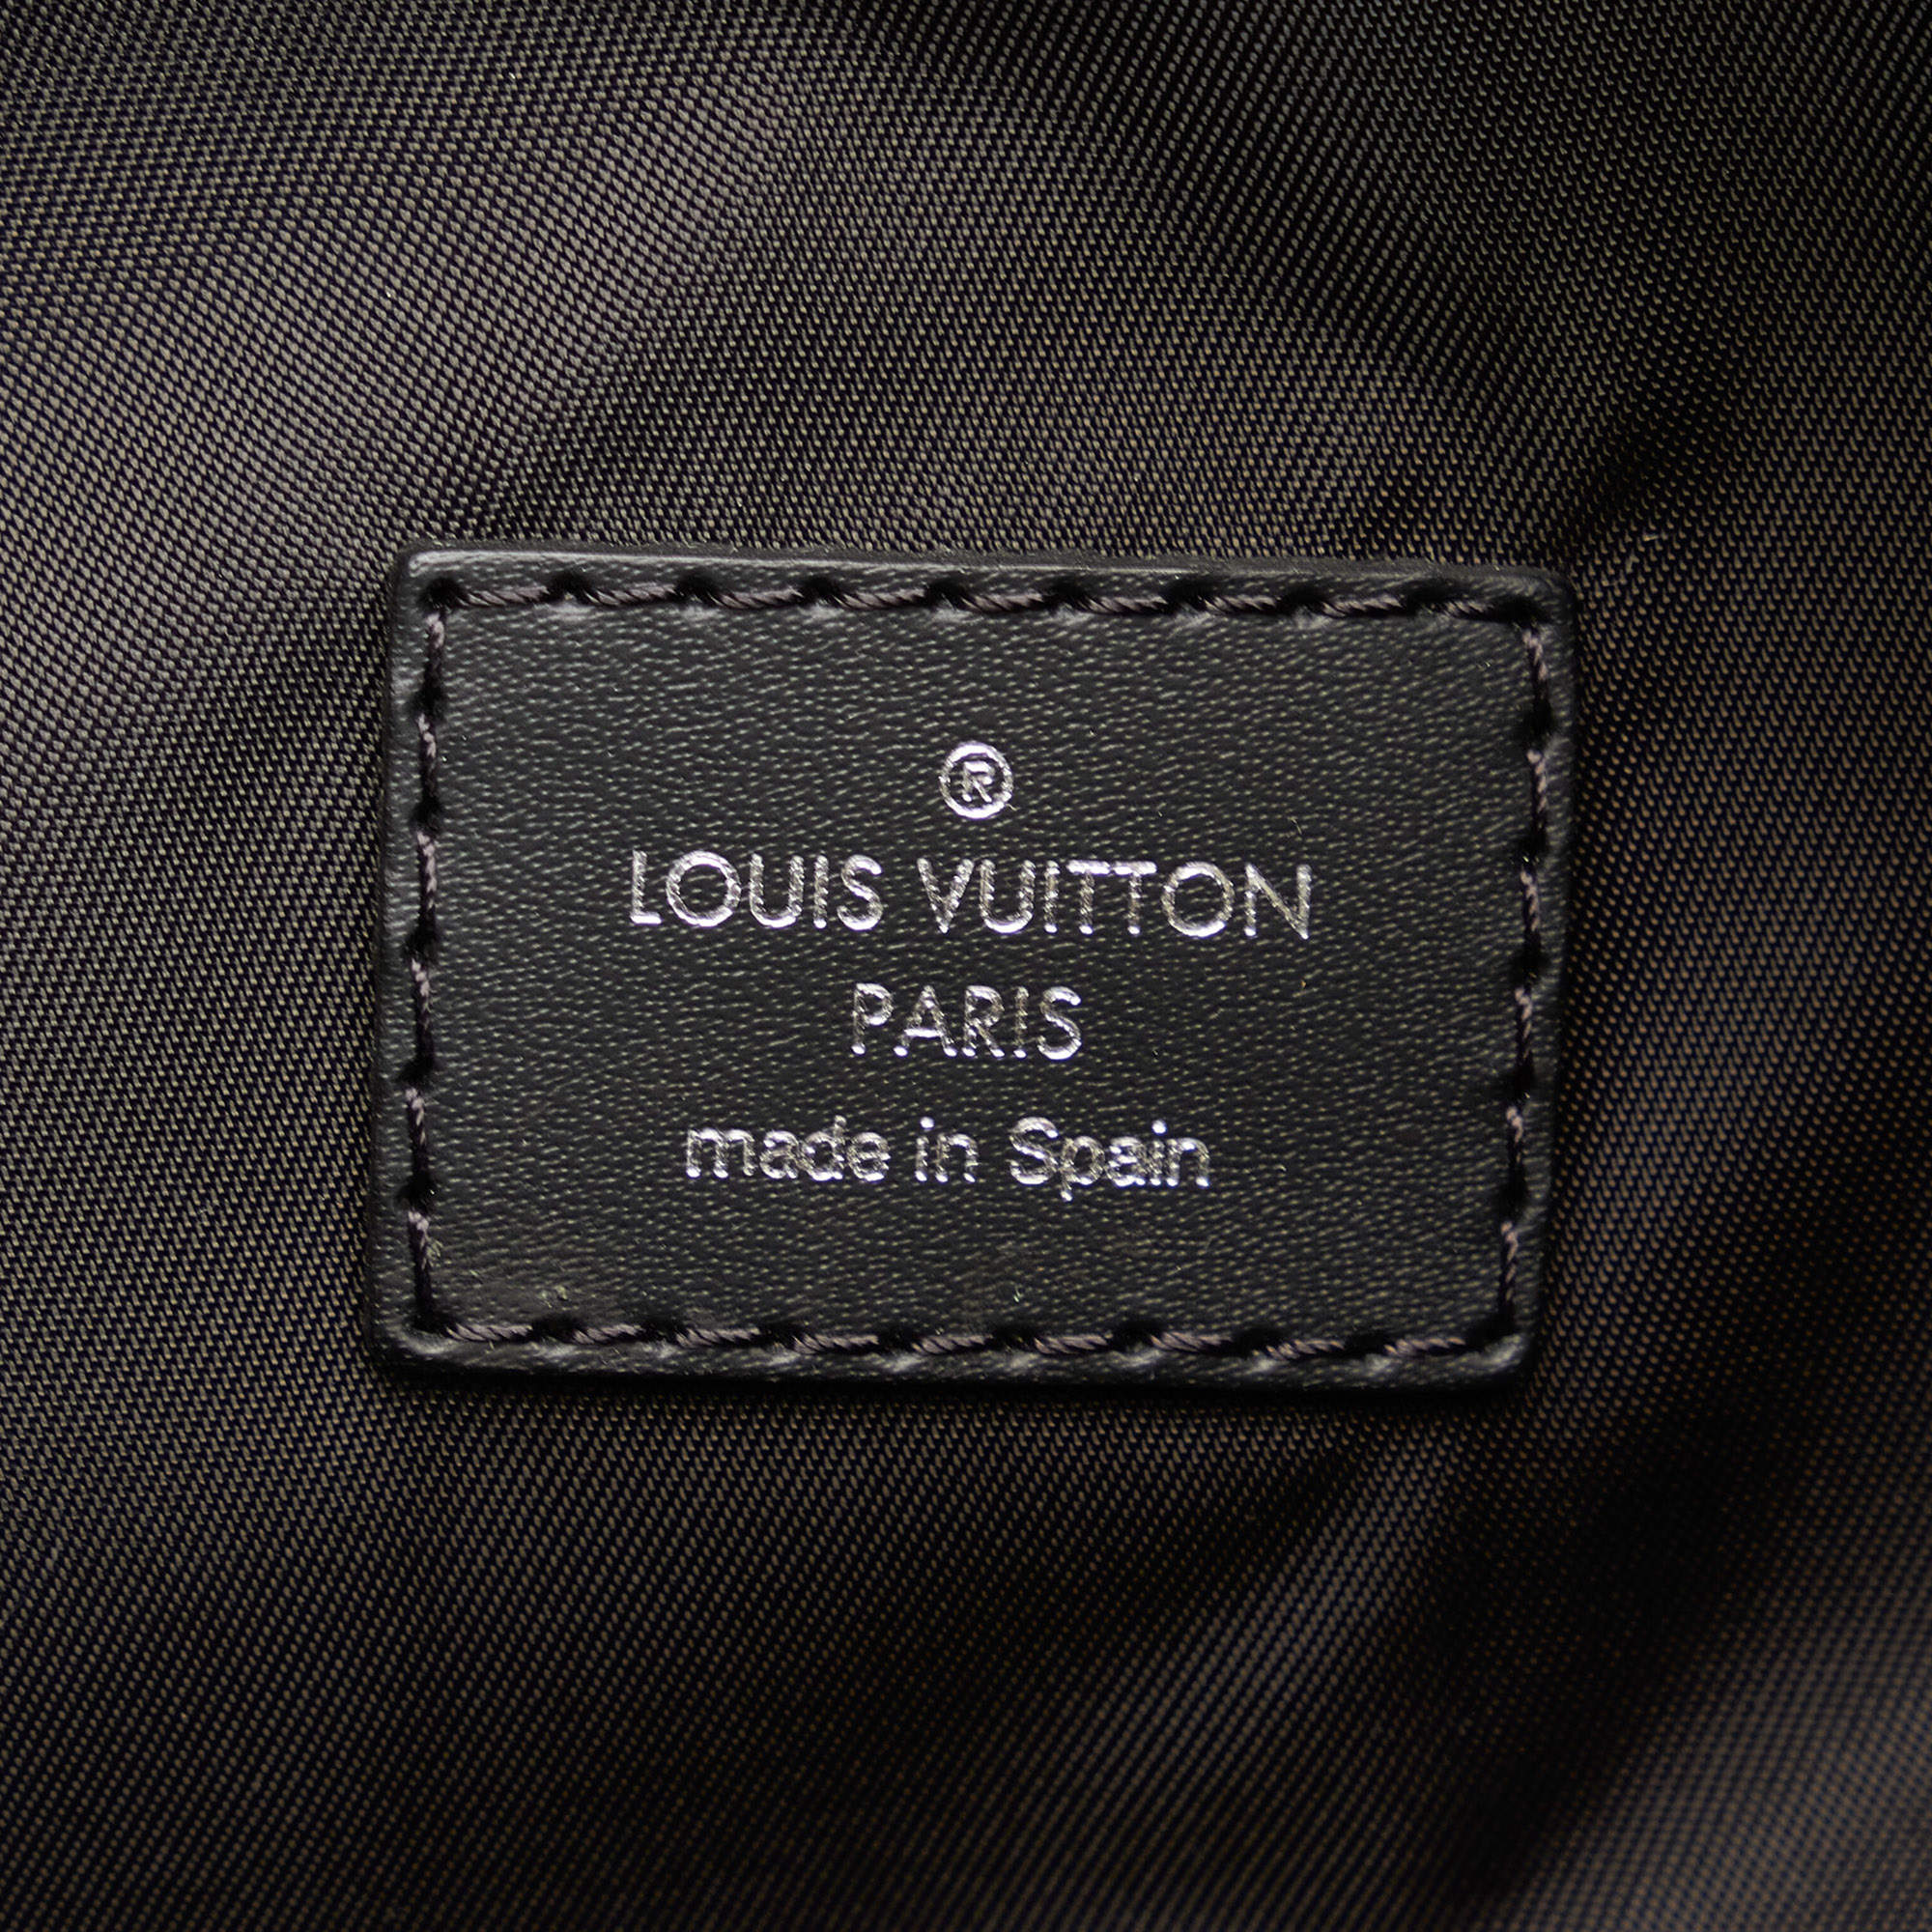 LOUIS VUITTON, Split Cabas Light Bag